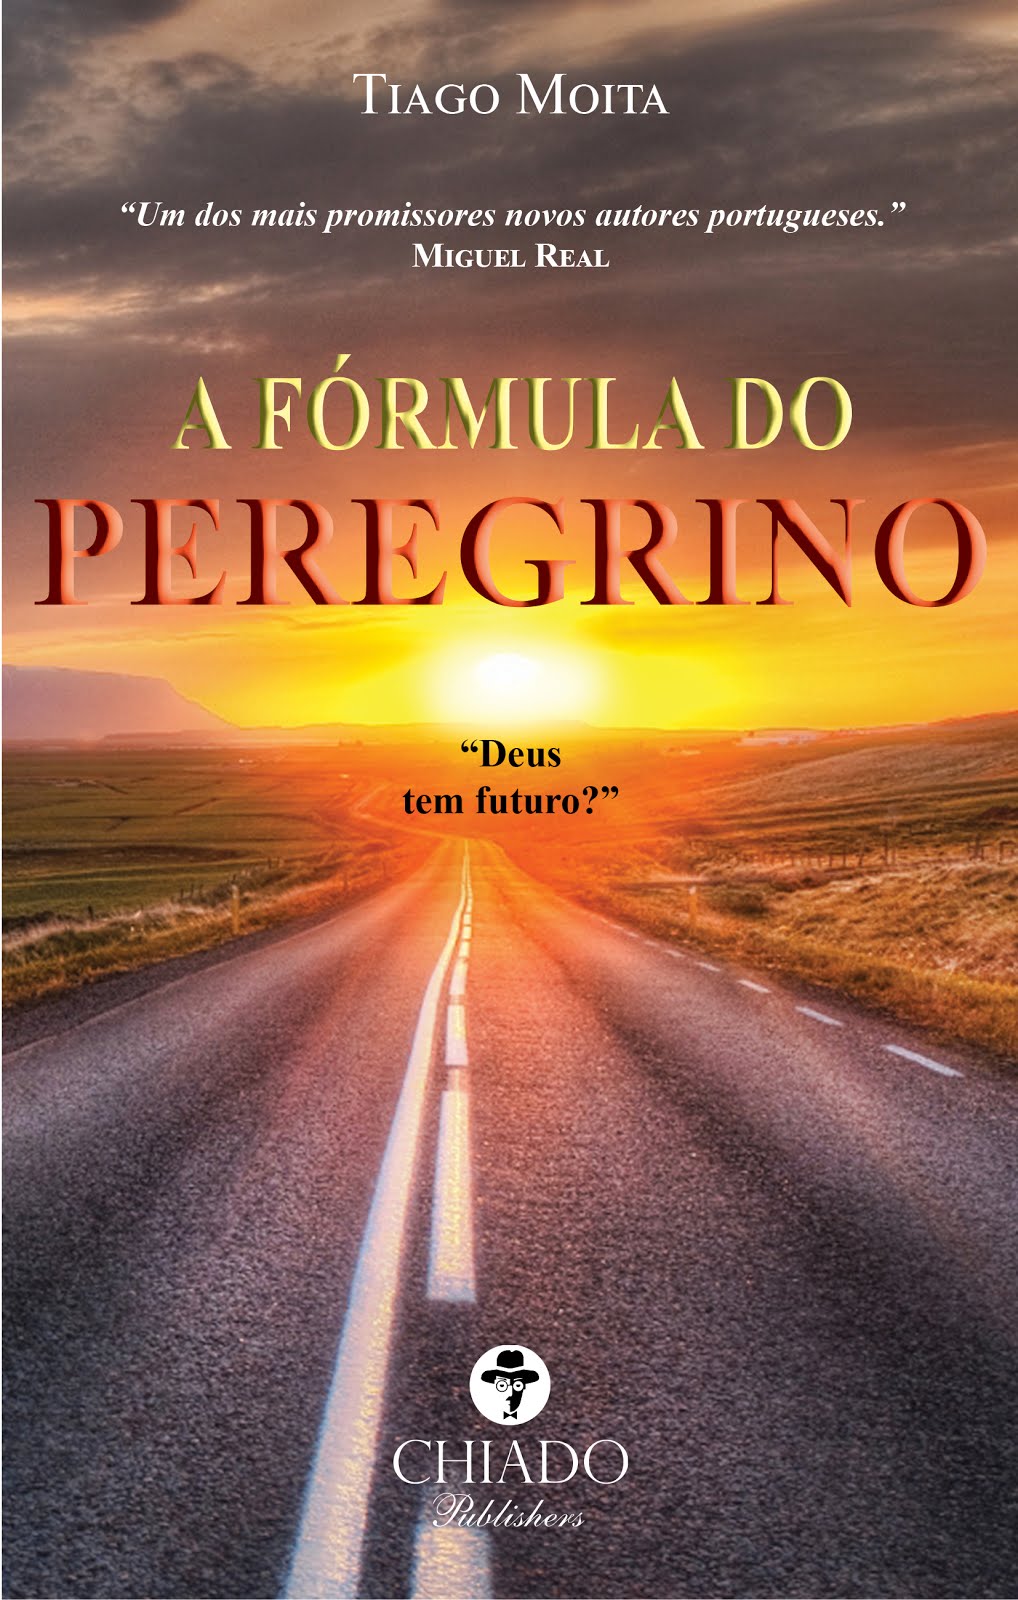 "A Fórmula do Peregrino"